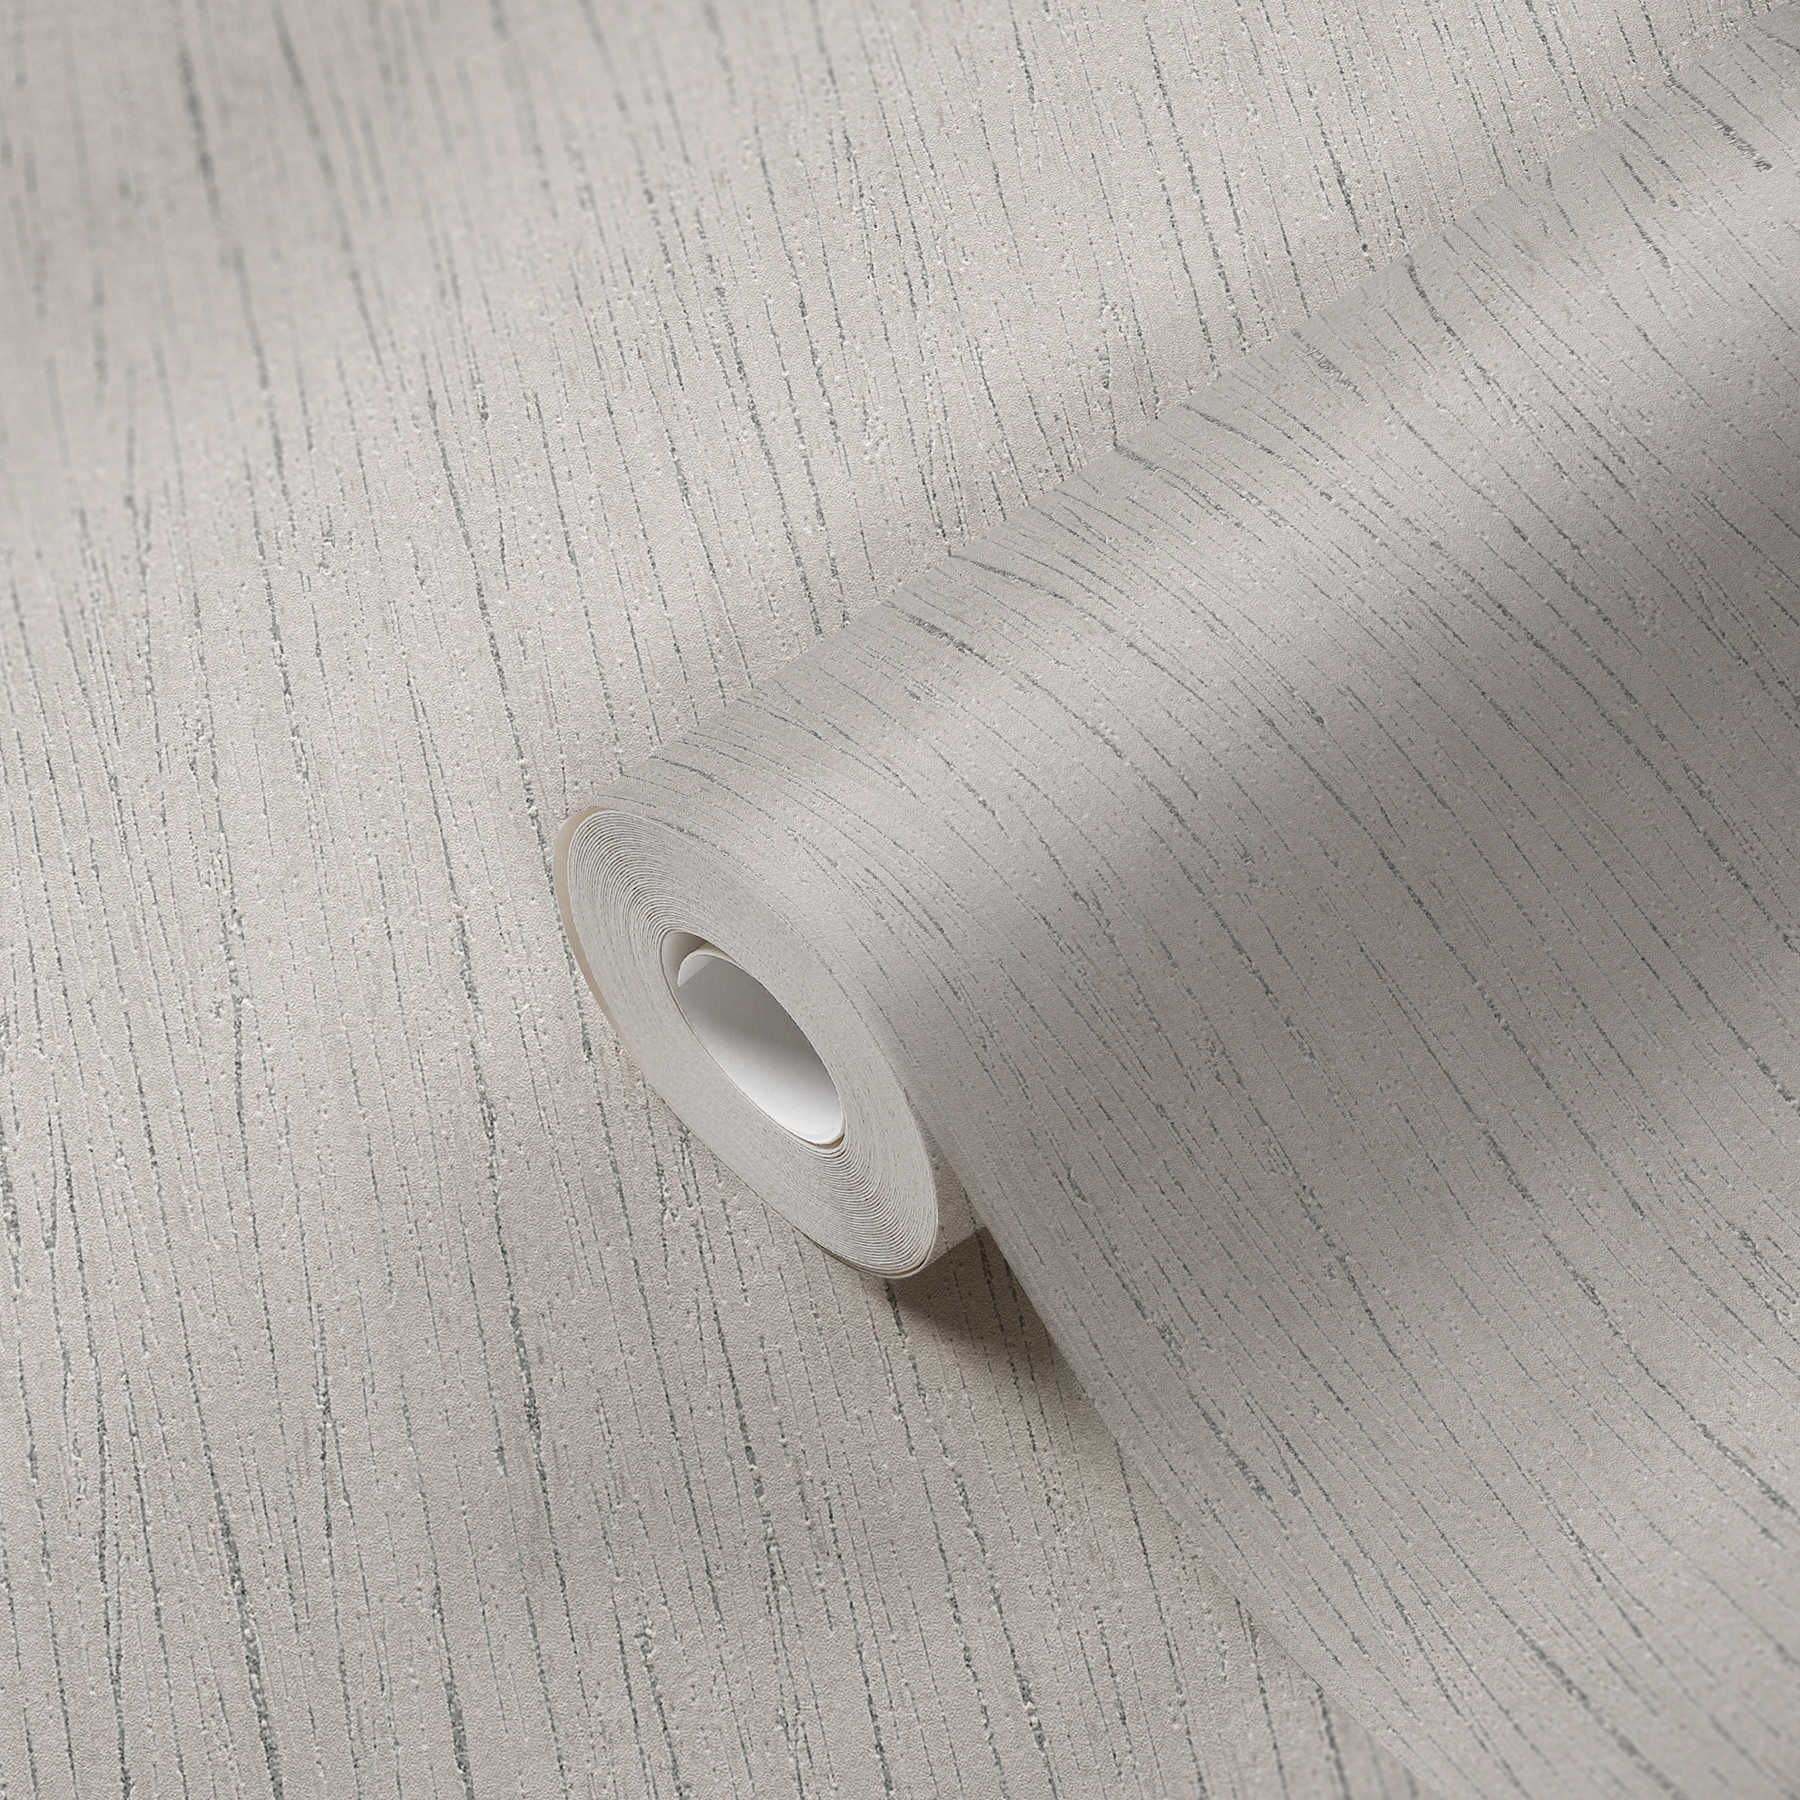             Papel pintado gris de tejido no tejido con motivos rayados en estilo natural
        